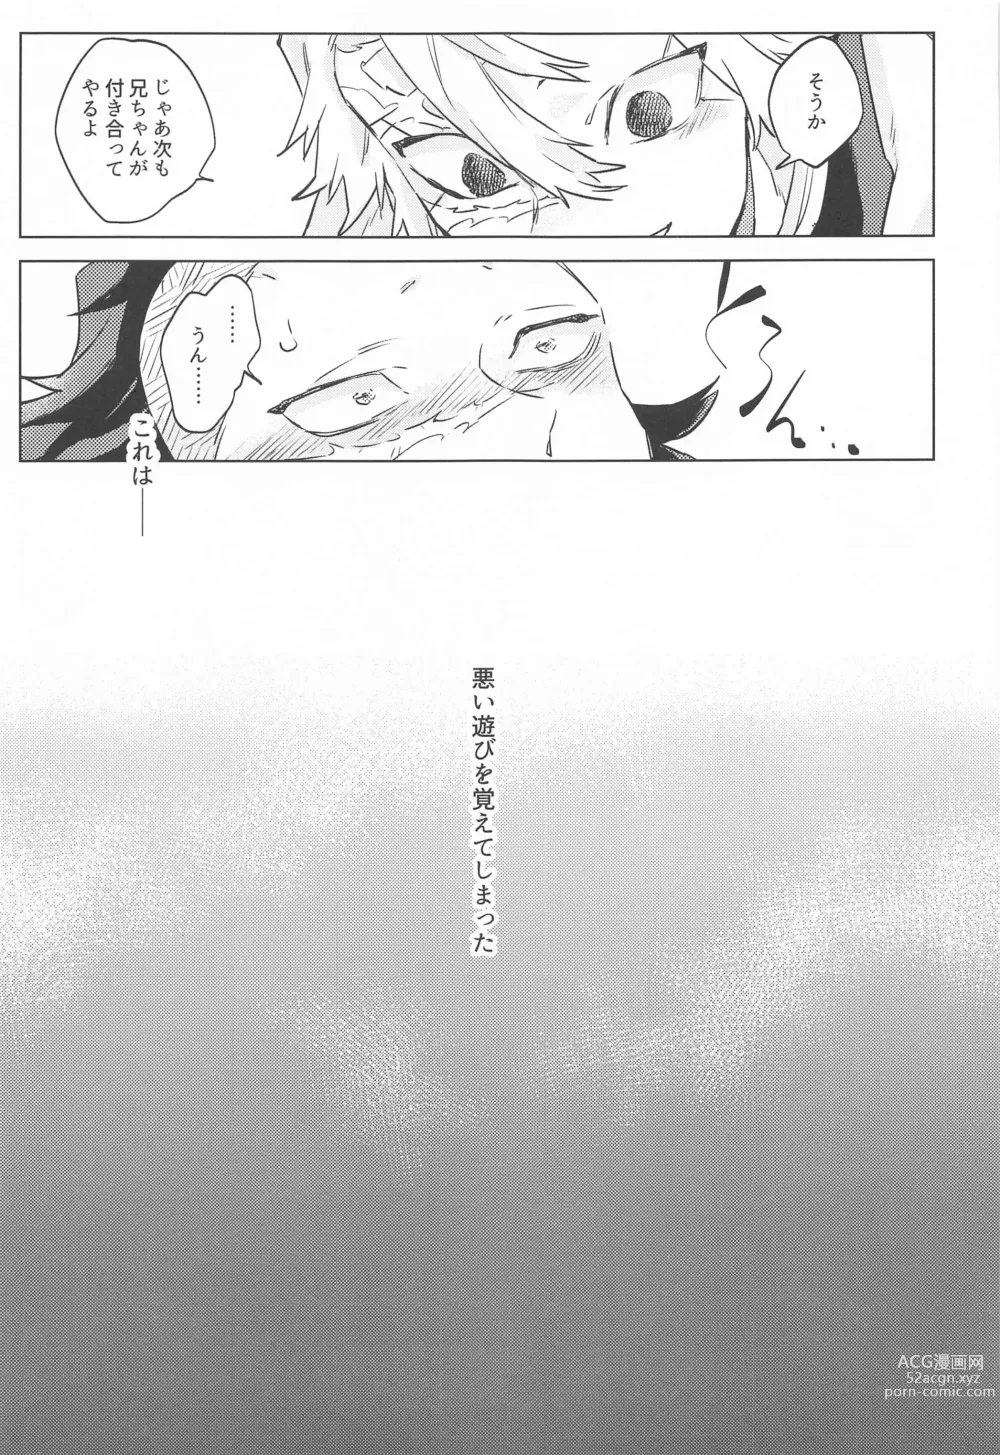 Page 15 of doujinshi Shion no Kusari